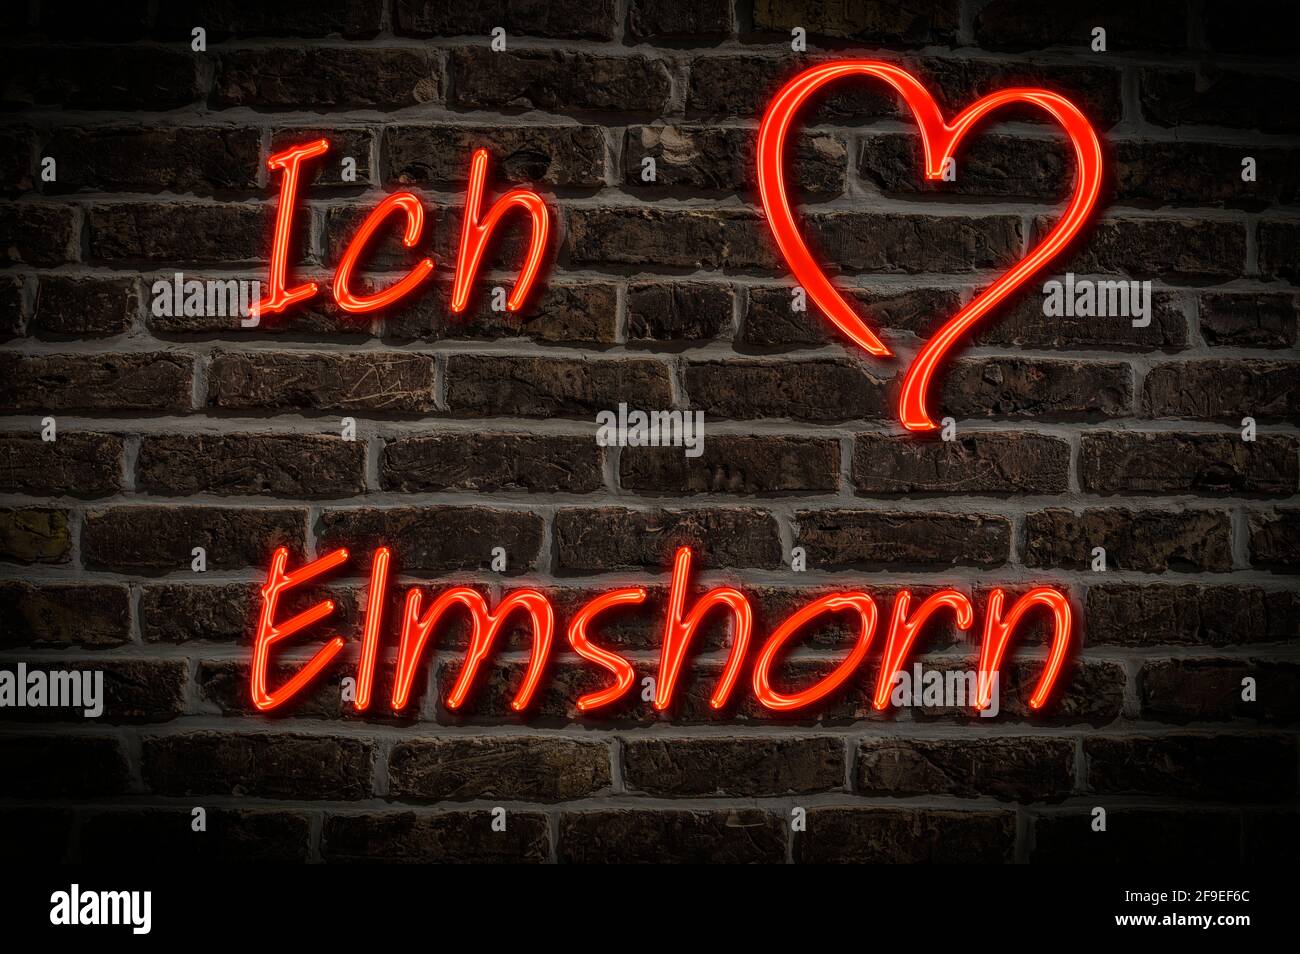 Leuchtreklame, Ich liebe Elmshorn, Schleswig-Holstein, Deutschland, Europa | Illuminated advertising, I love Elmshorn, Schleswig-Holstein, Germany, Eu Stock Photo